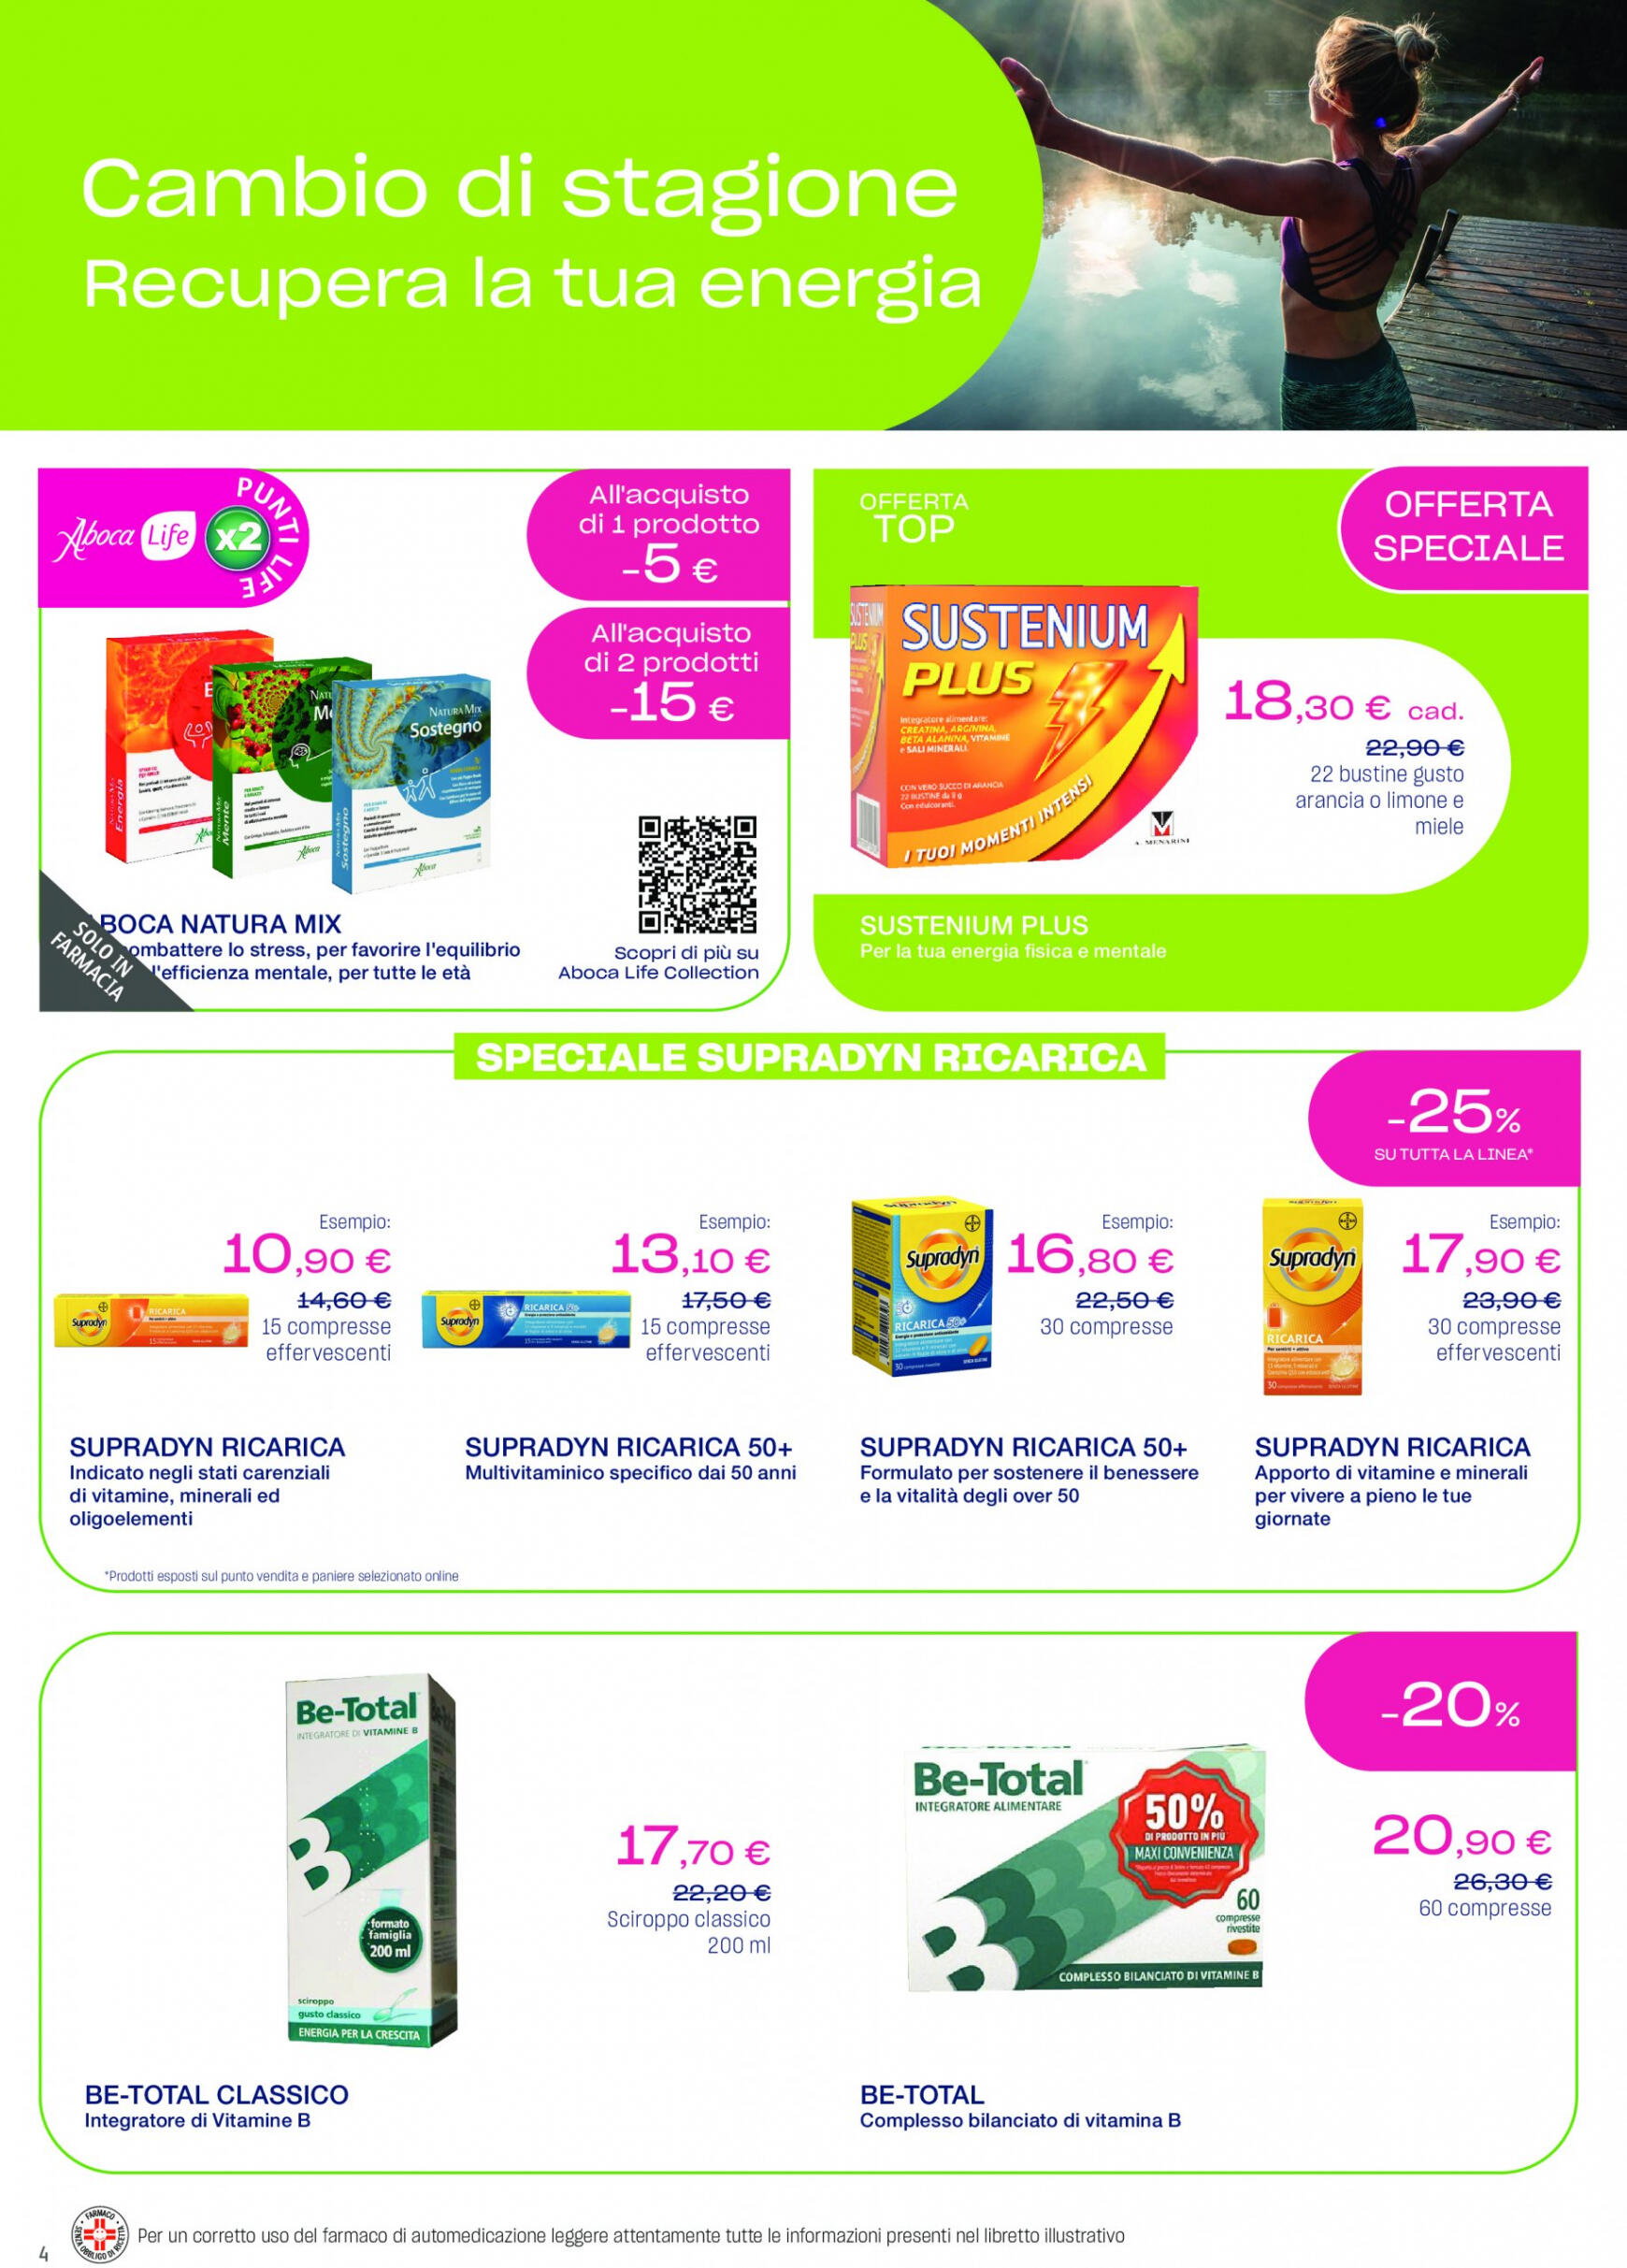 lloyds-farmacia - Nuovo volantino Lloyds Farmacia - Ad aprile metti in agenda la prevenzione! 27.03. - 01.05. - page: 4